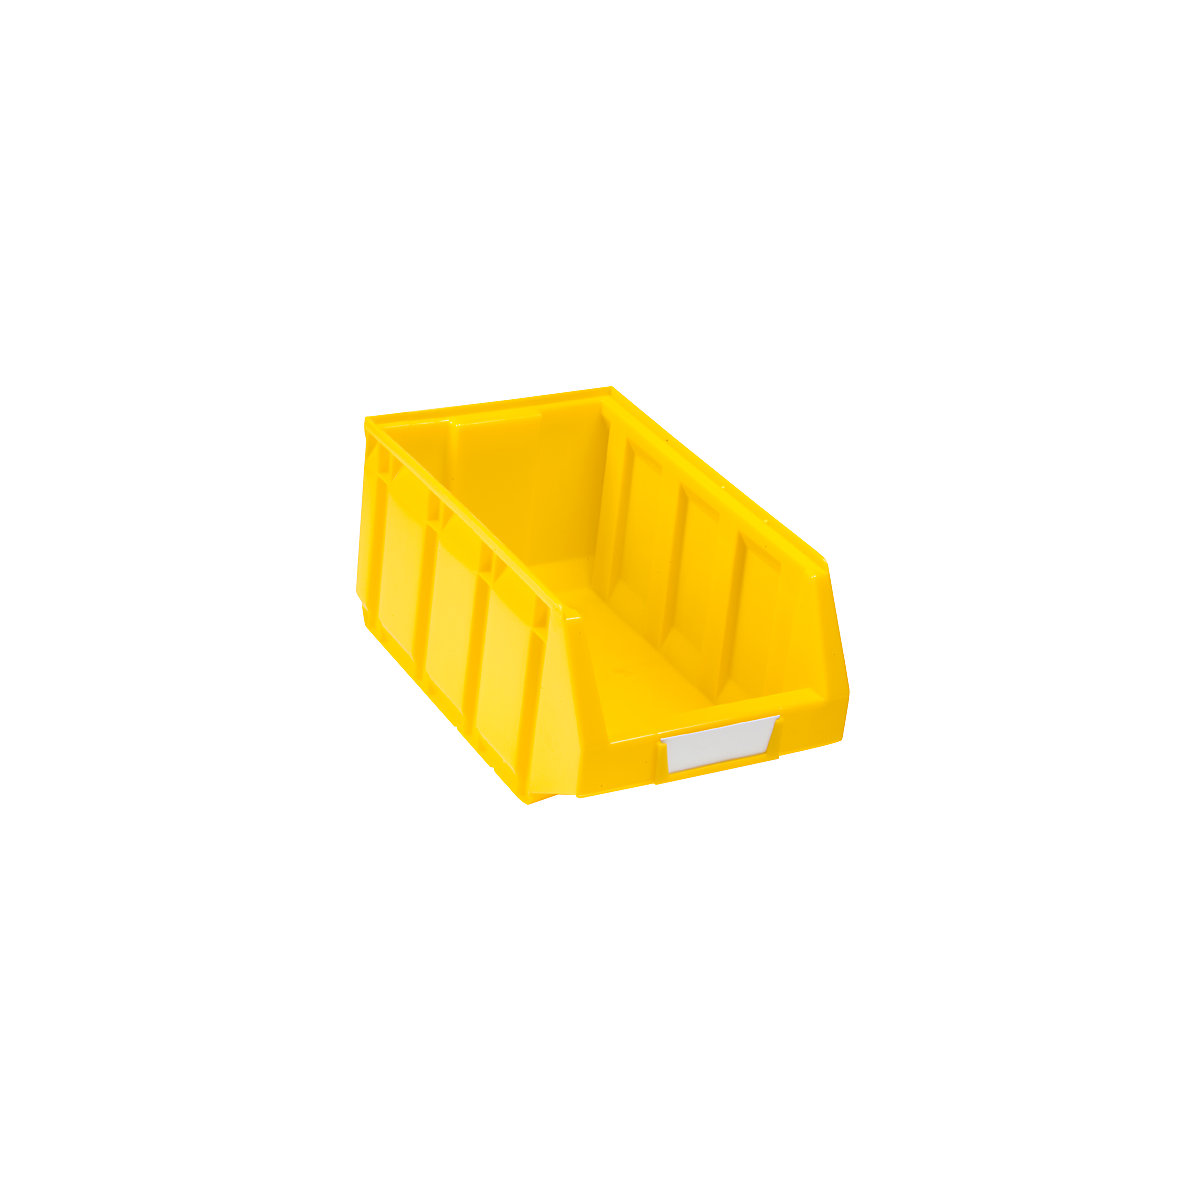 Sichtlagerkasten aus Polyethylen, LxBxH 345 x 205 x 164 mm, gelb, VE 24 Stk-8